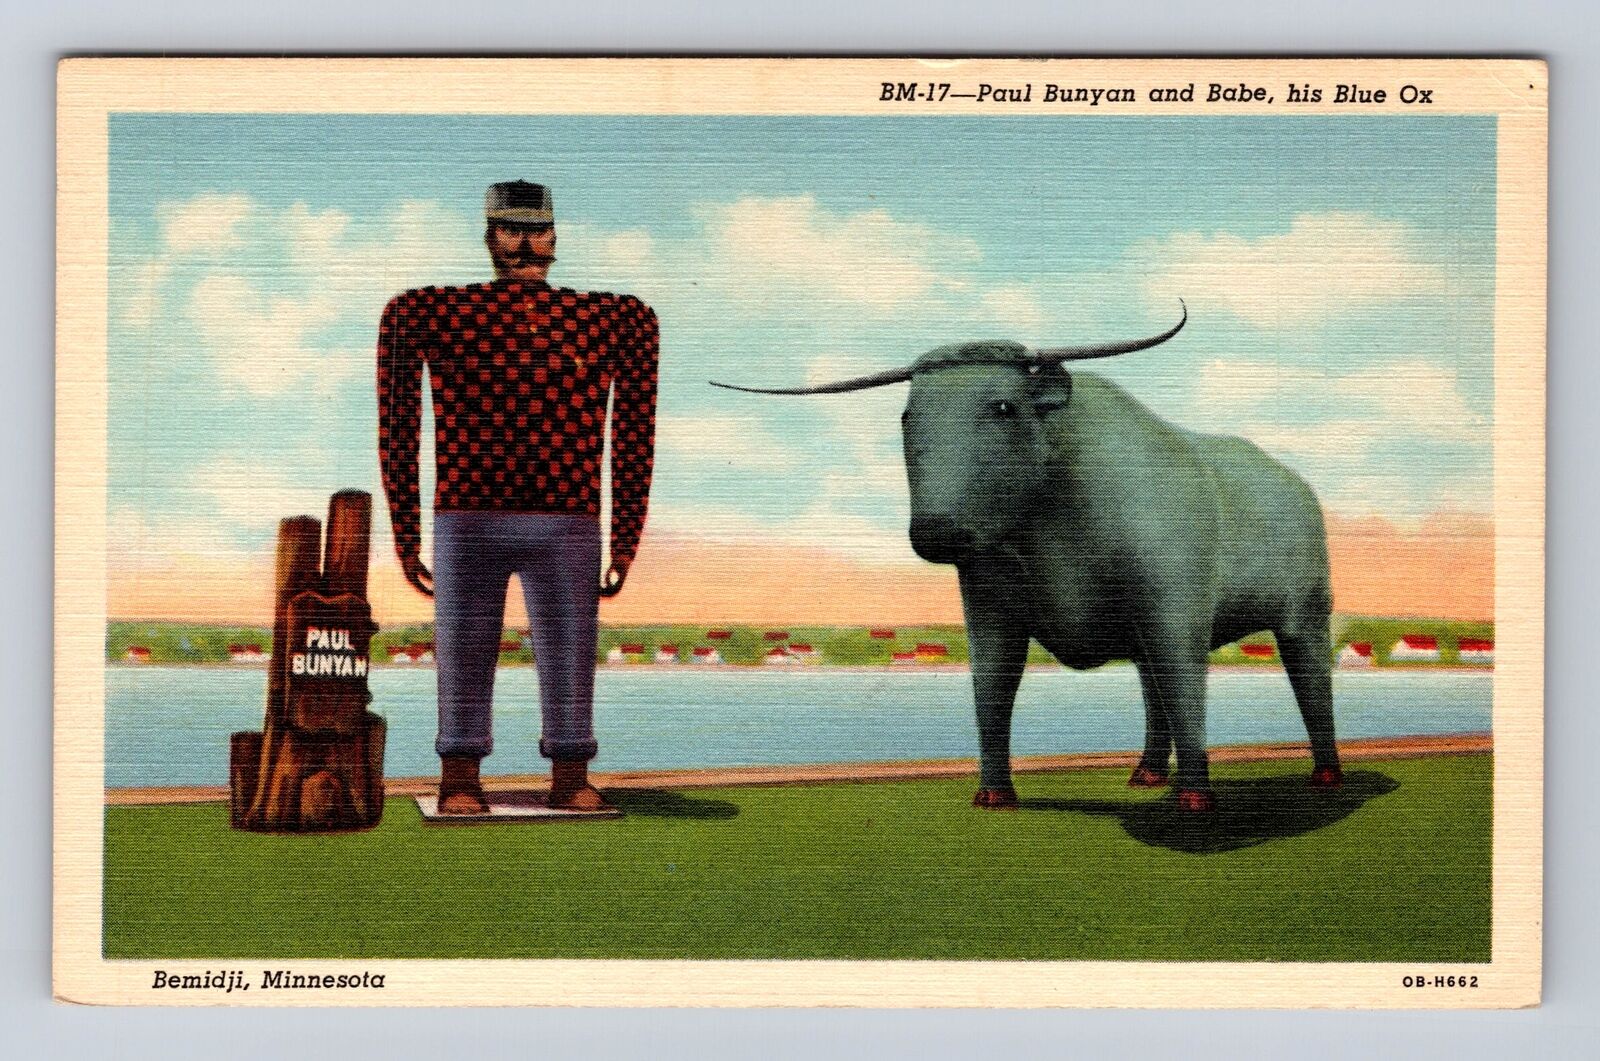 Lake Bemidji MN-Minnesota, Paul Bunyan Statue, Blue Ox Vintage Souvenir Postcard